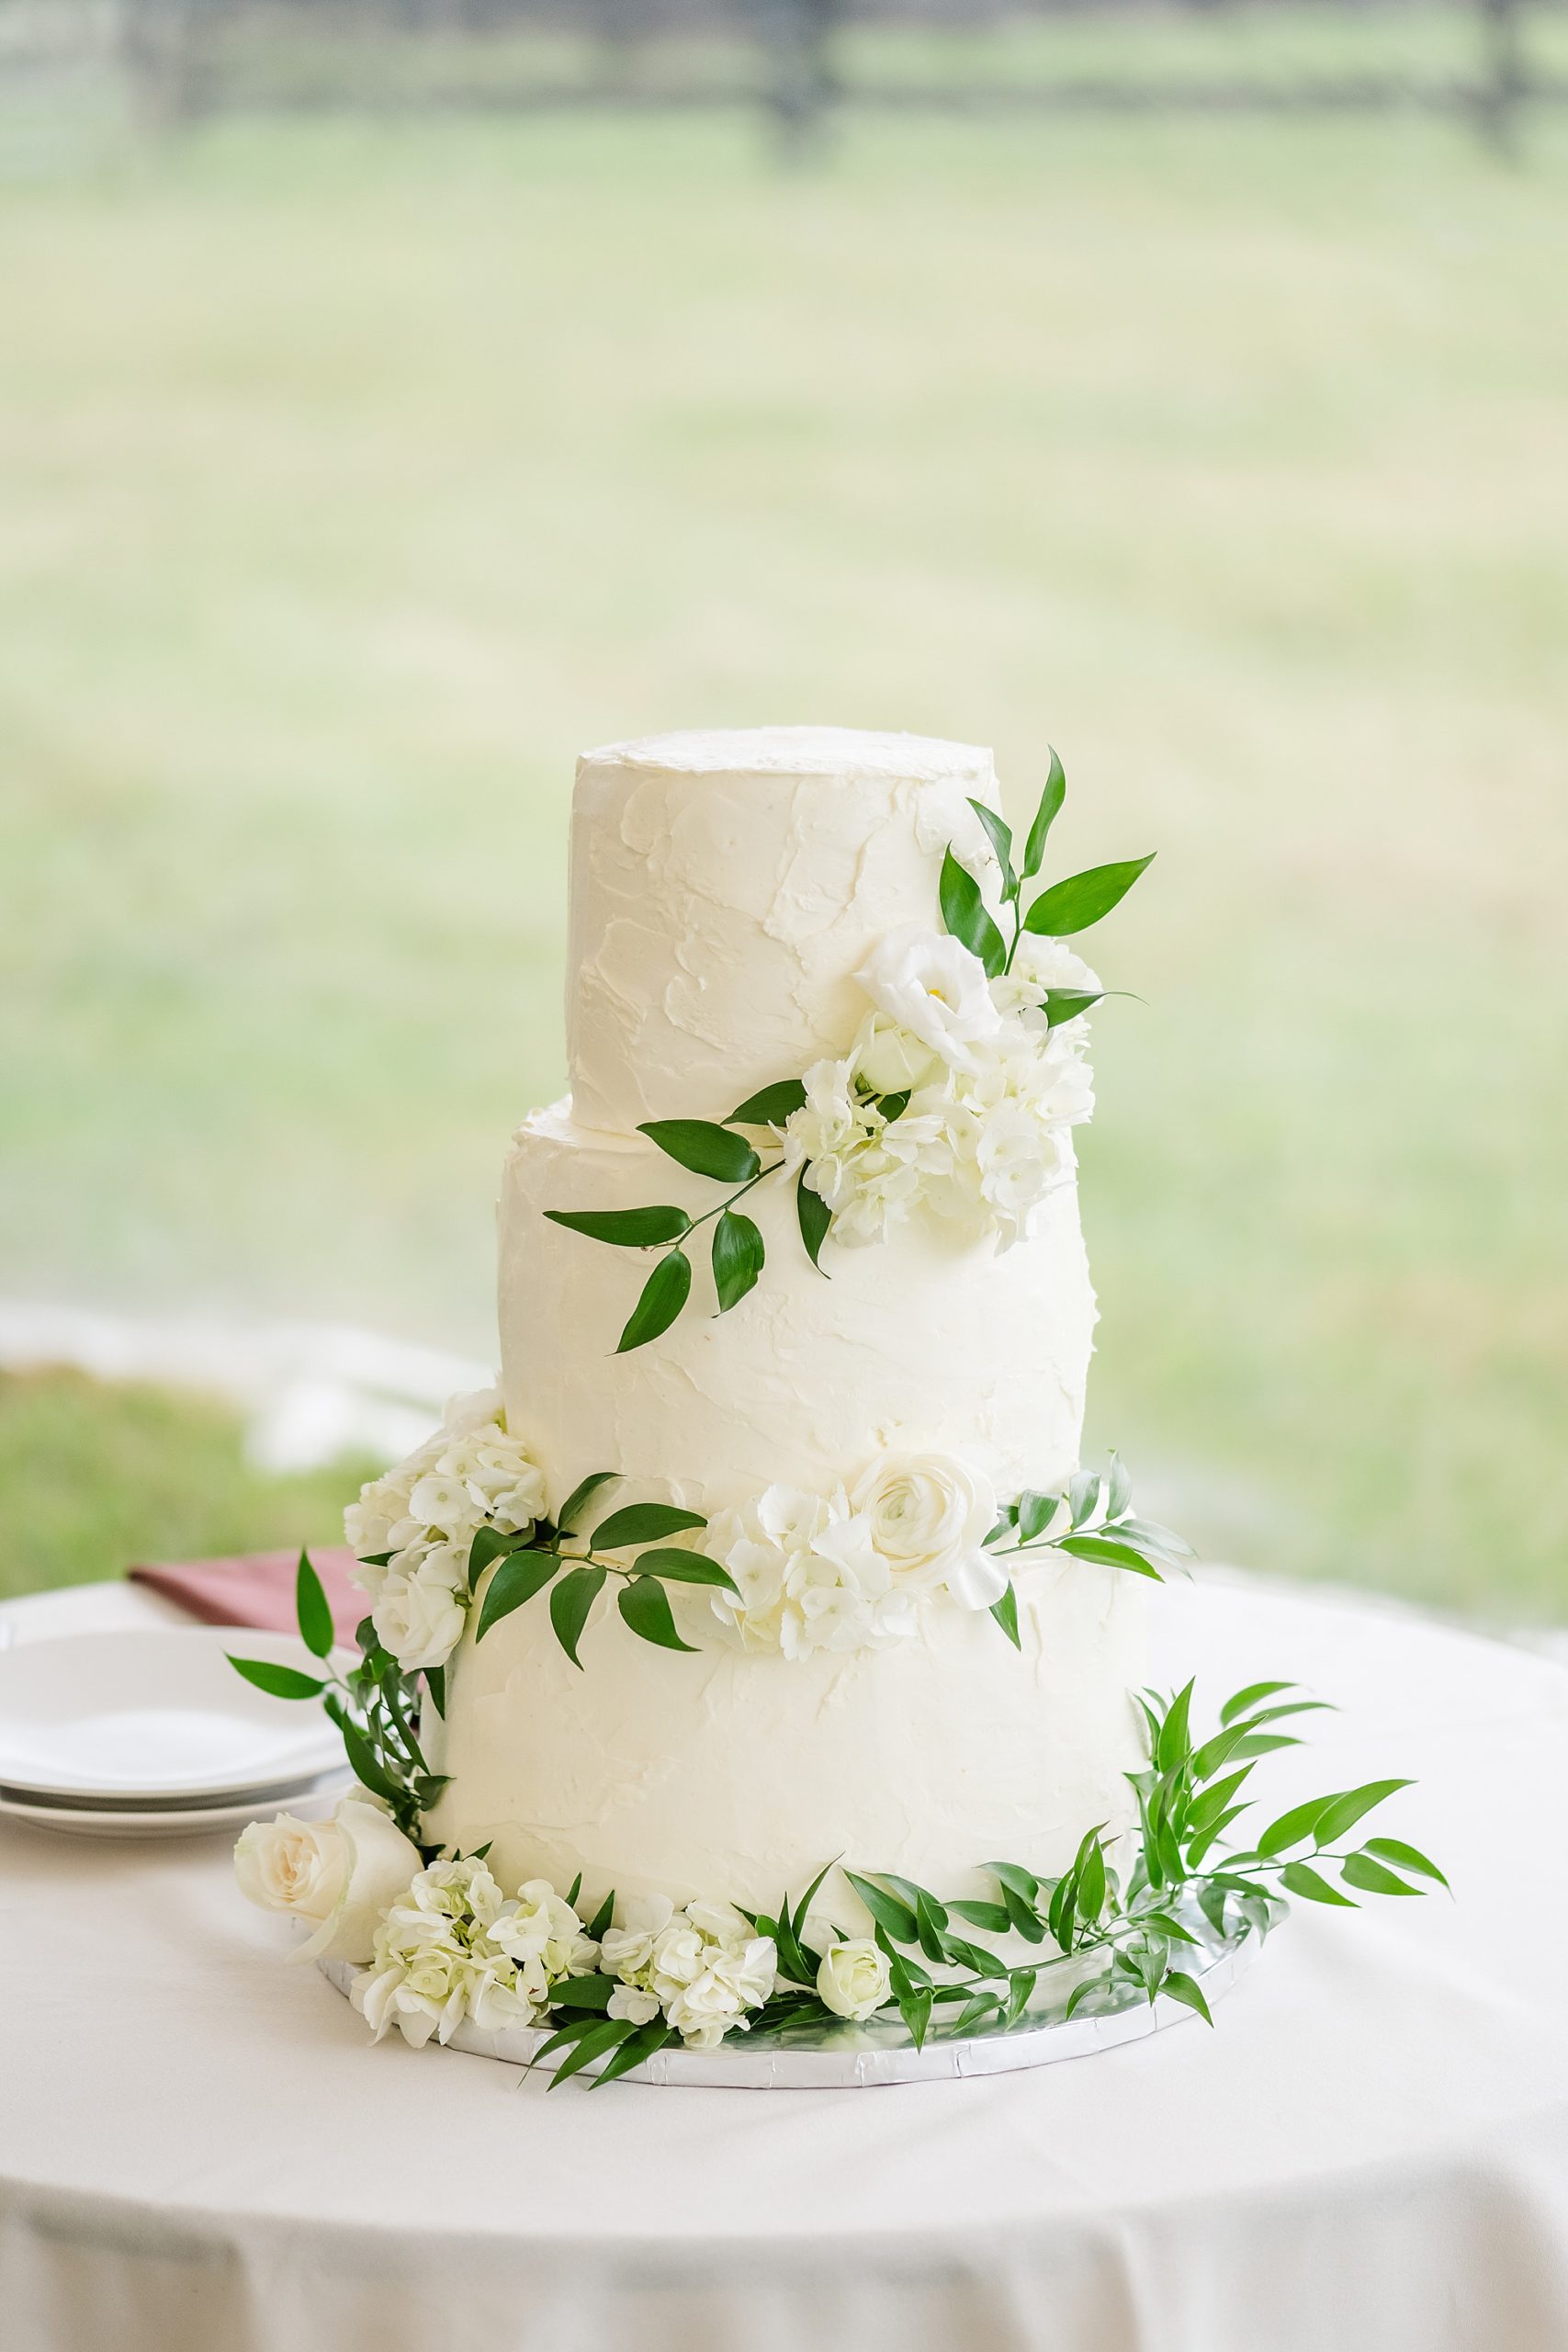 Wedding Cake at Mount Fair Farm Wedding Photographed by Virginia Wedding Photographer Kailey Brianna Photographer